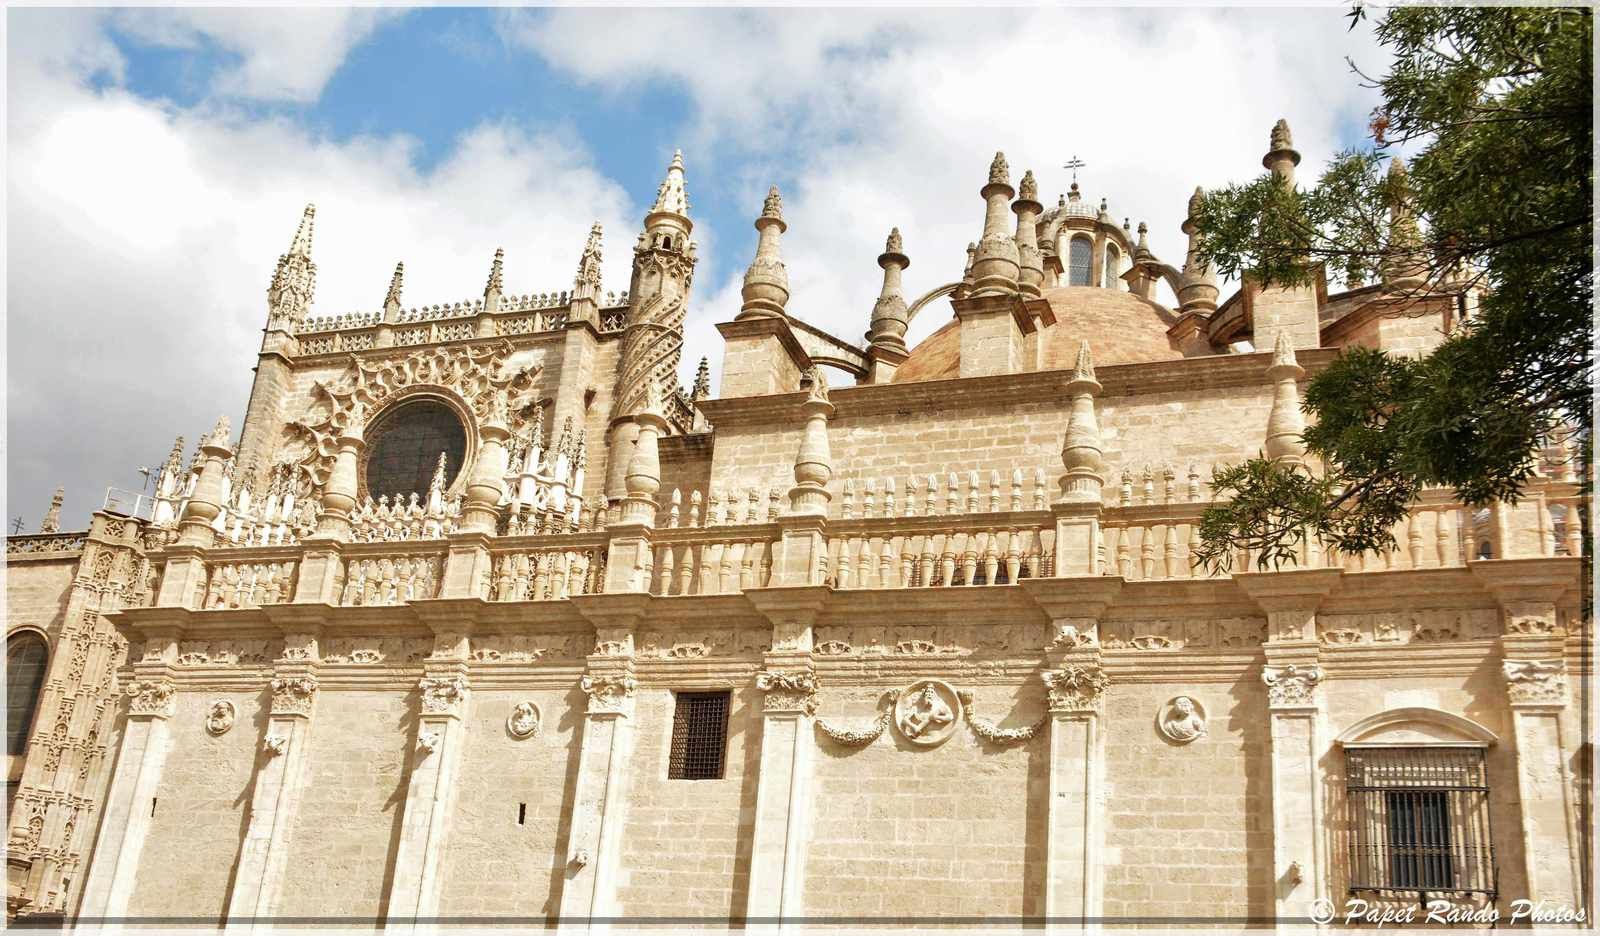 La Cathedrale de Sevilla,inaugurée en 1182 devenue gothique, aussi la plus grande, avec des parties de l'ancienne mosquée, ensuite photos dans la ville 